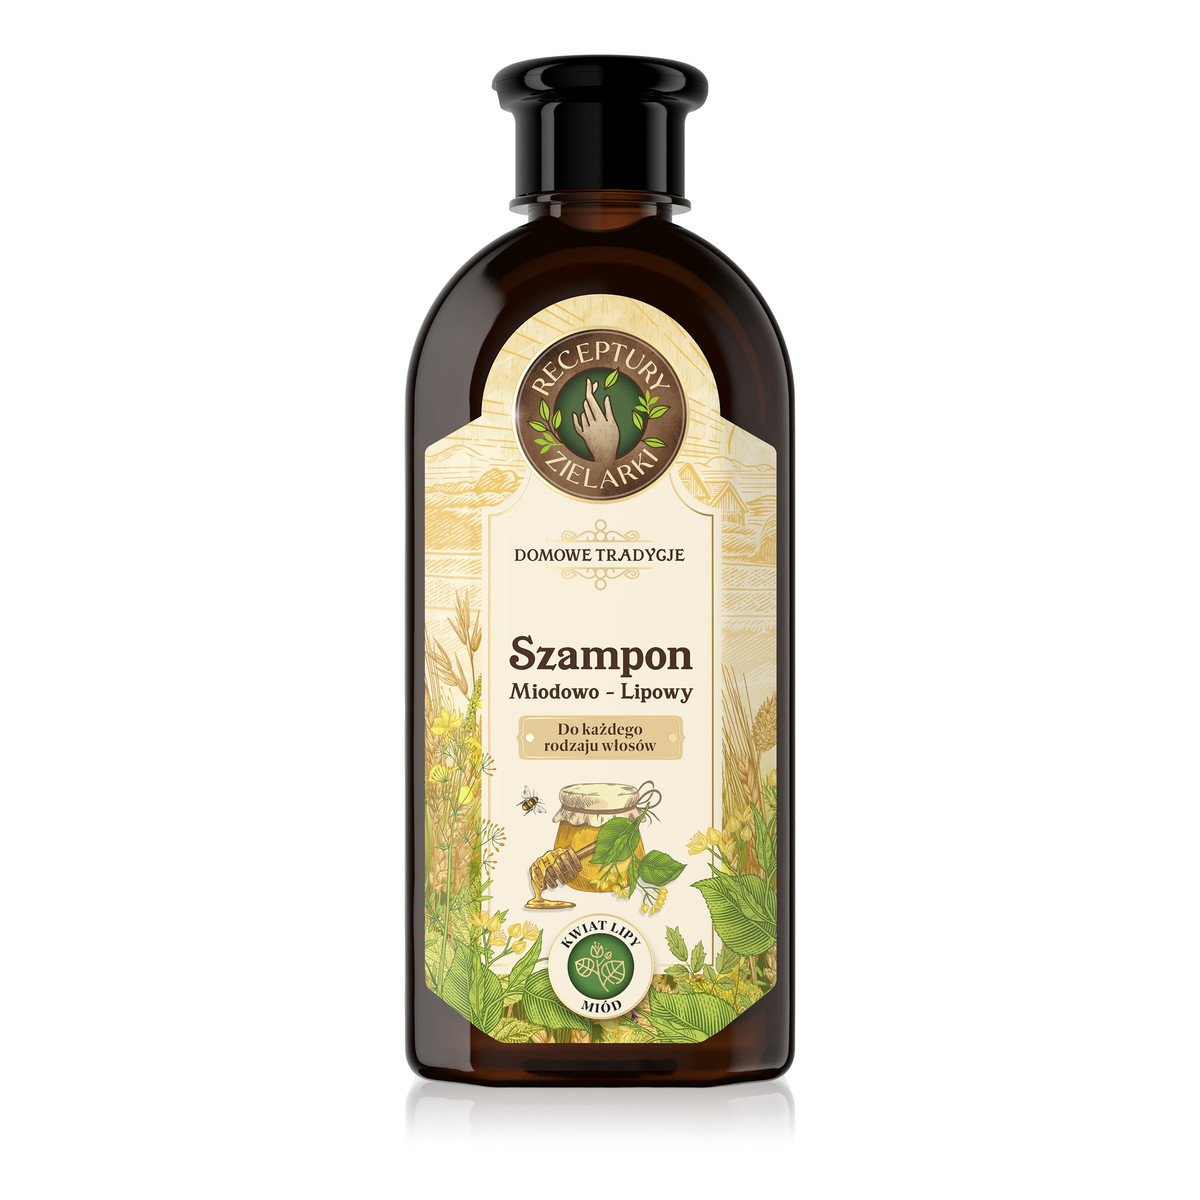 Receptury Zielarki Domowe Tradycje szampon miodowo-lipowy do każdego rodzaju włosów 350ml